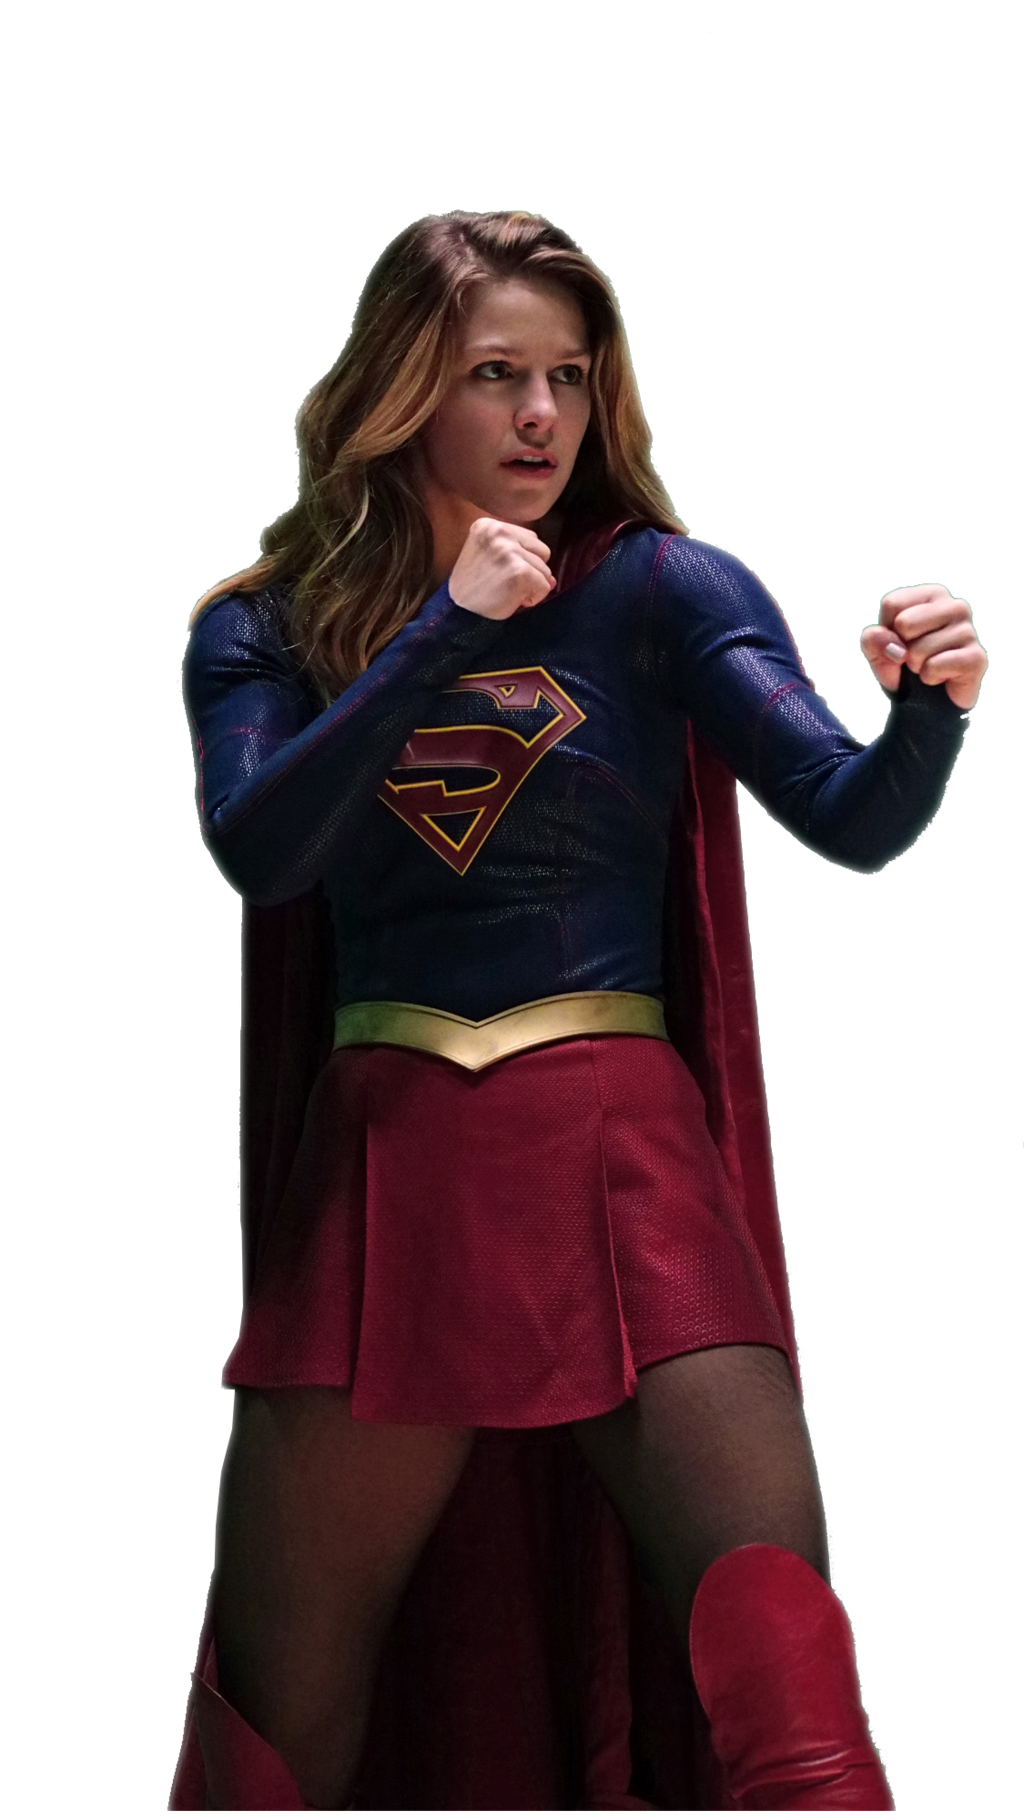 Imagen de fondo de la supergirl PNG de acción